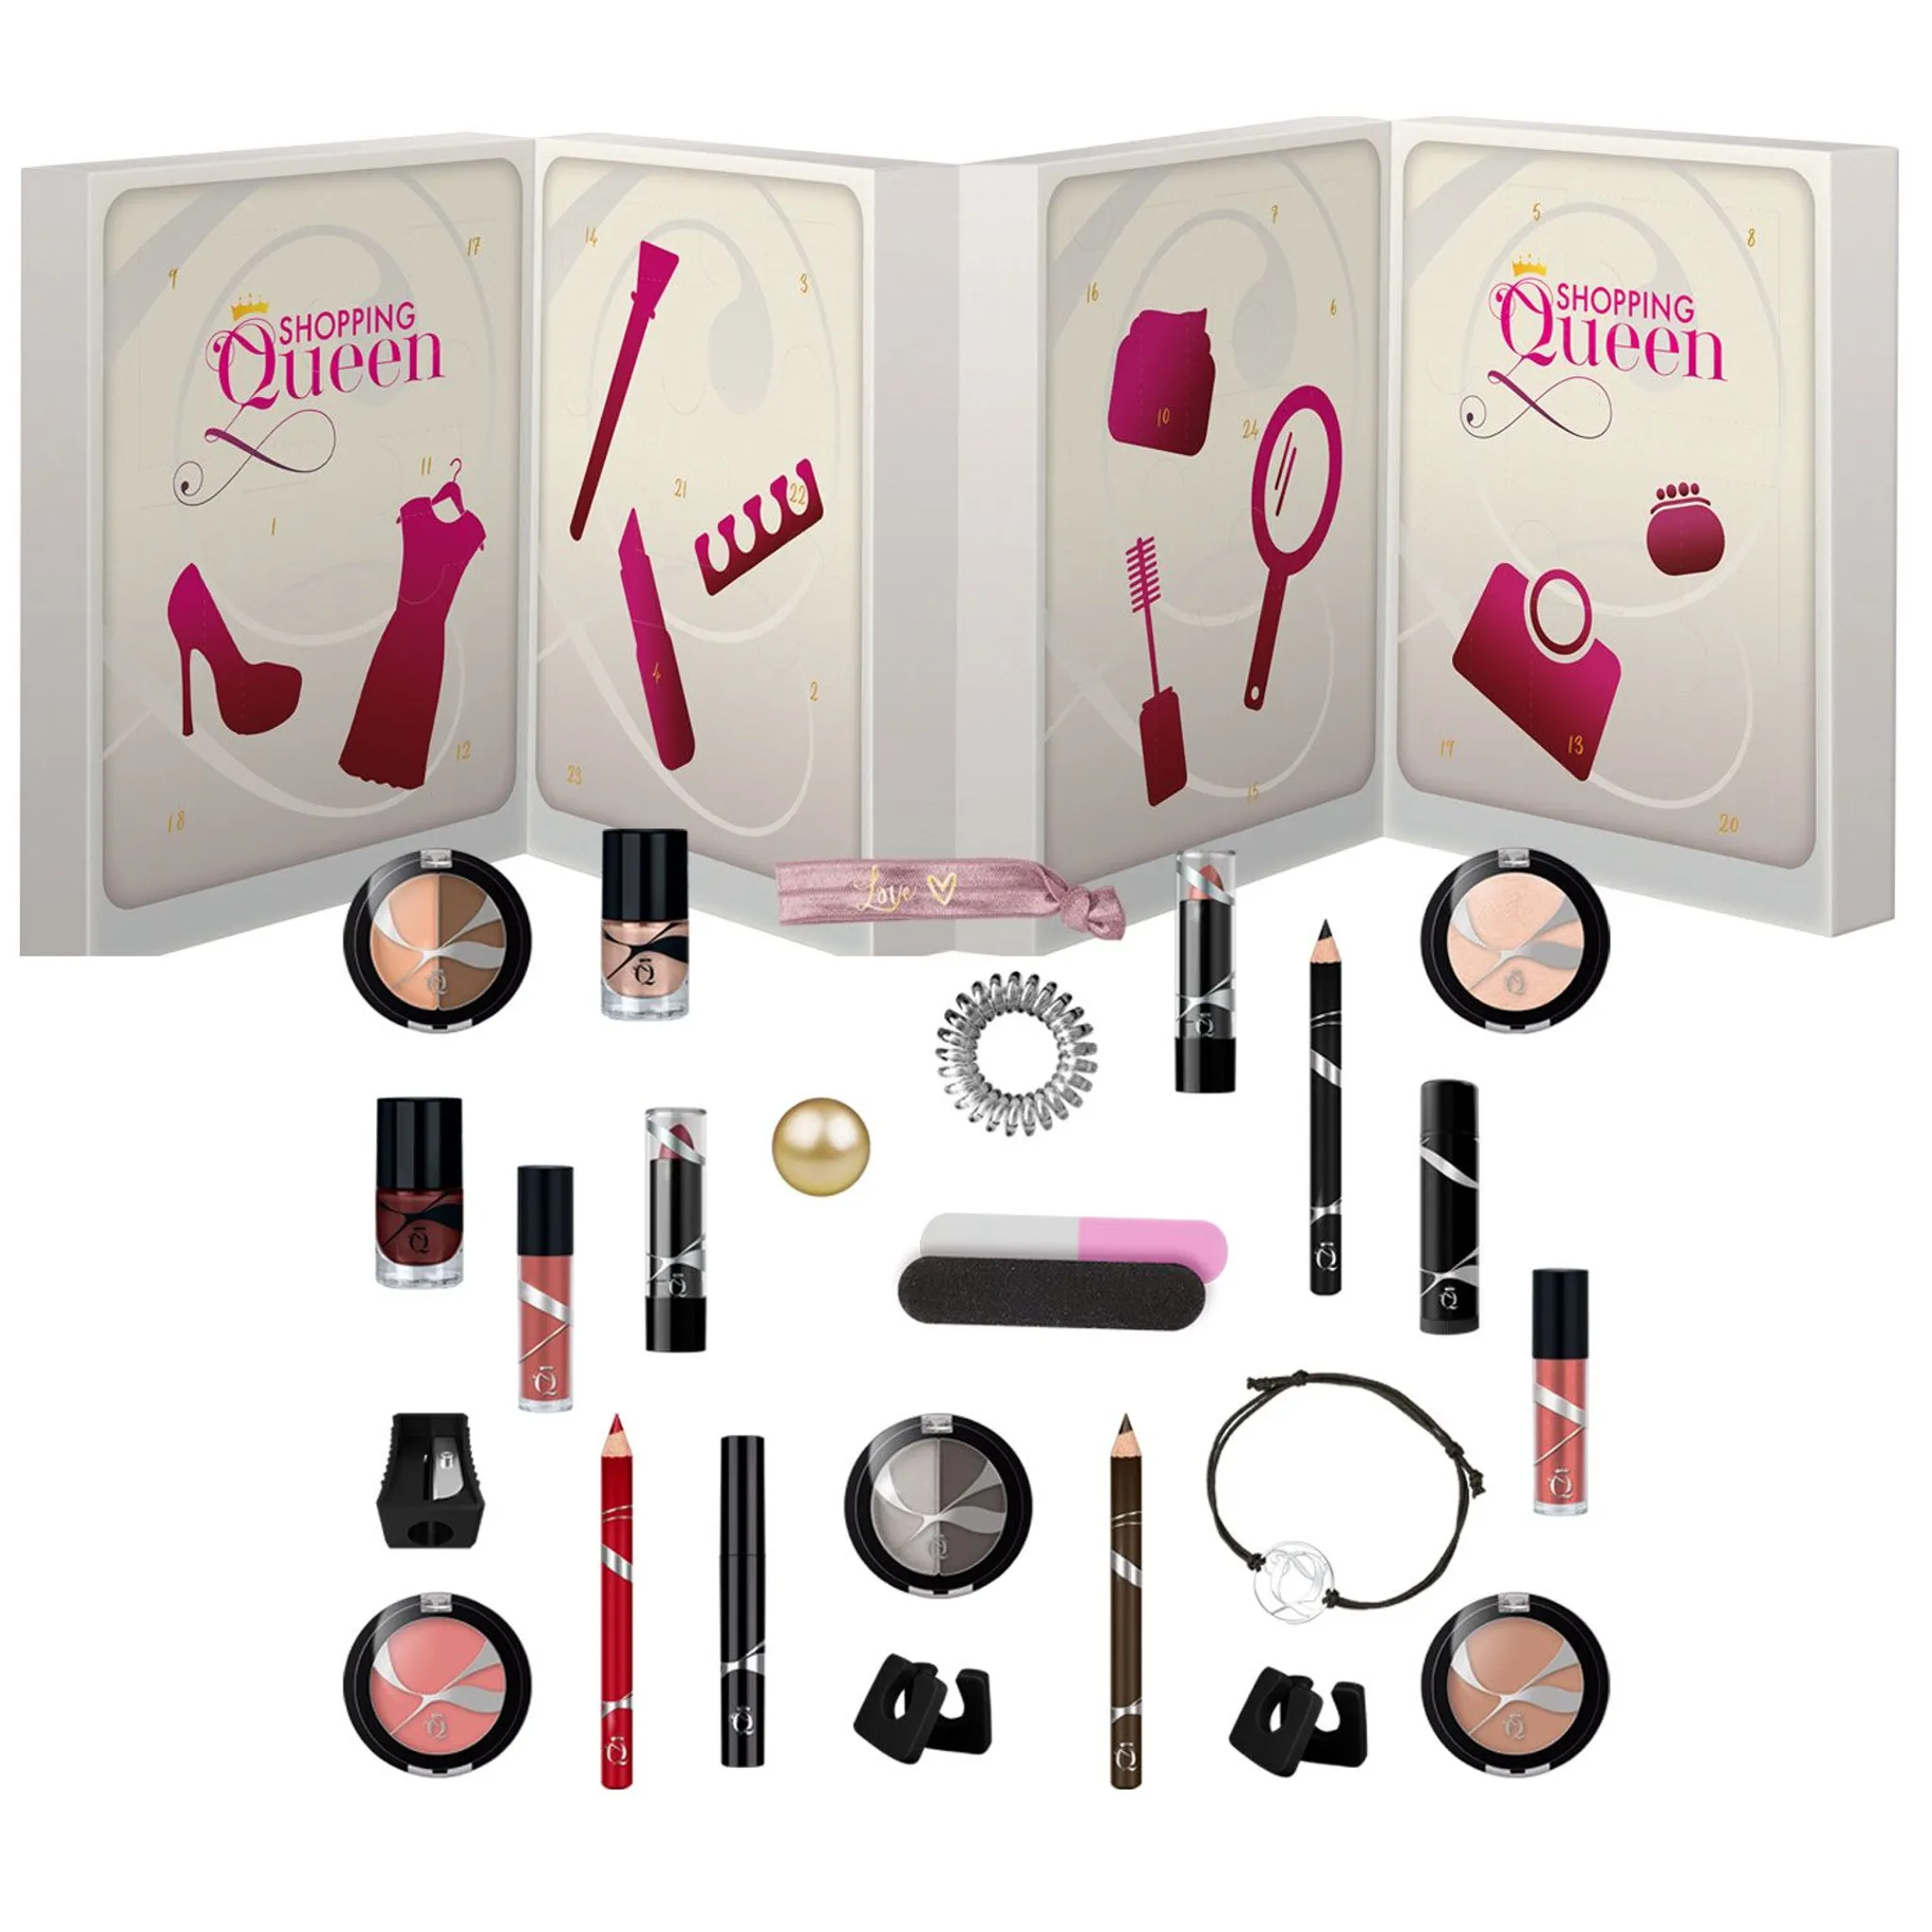 Shopping 24 Queen Beauty Adventskalender